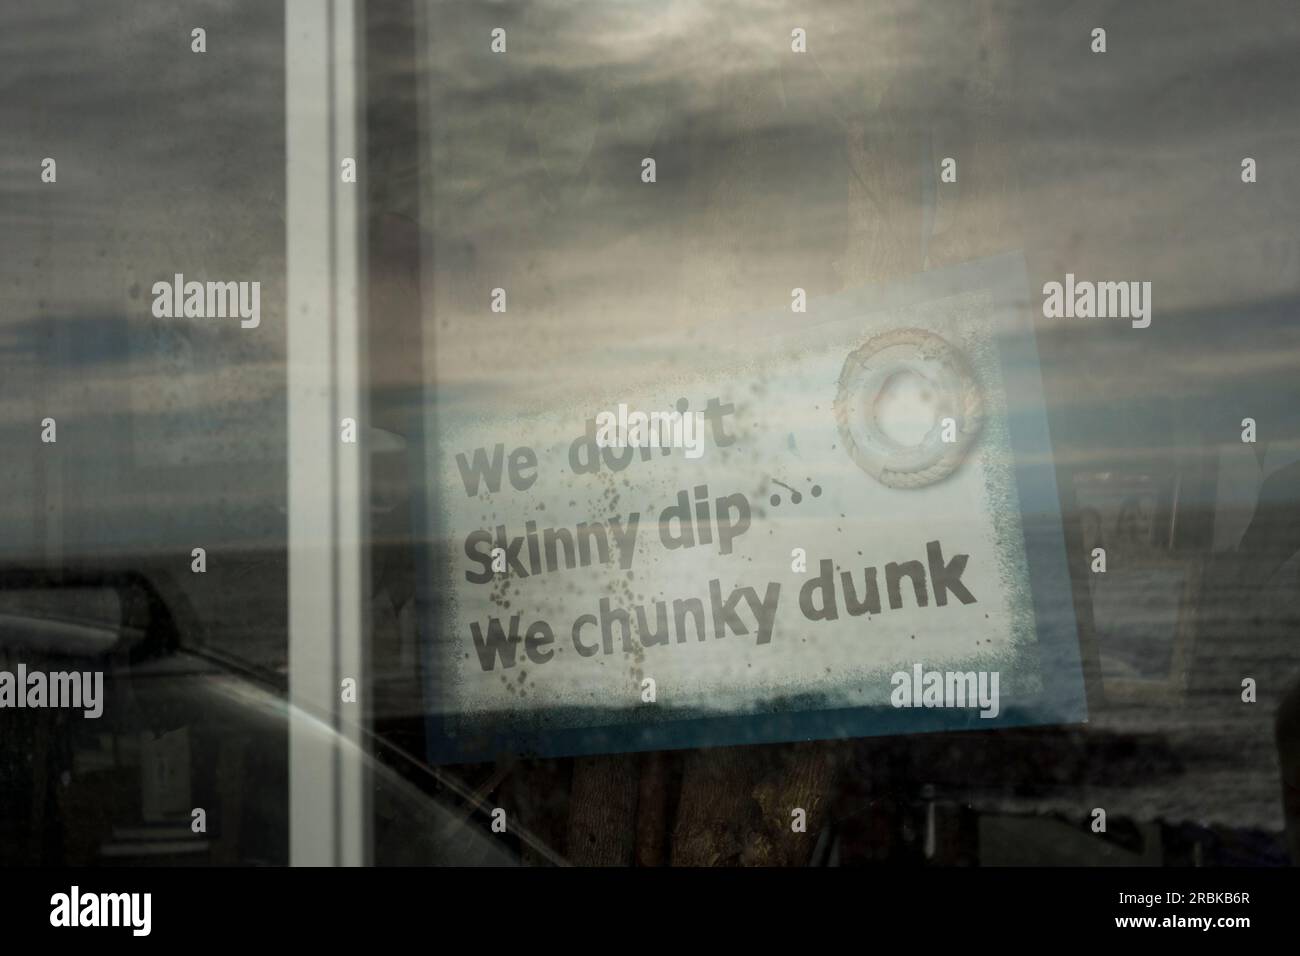 Panneau indiquant : « nous n'avons pas de trempette mince, nous avons du dunk chunky » Banque D'Images